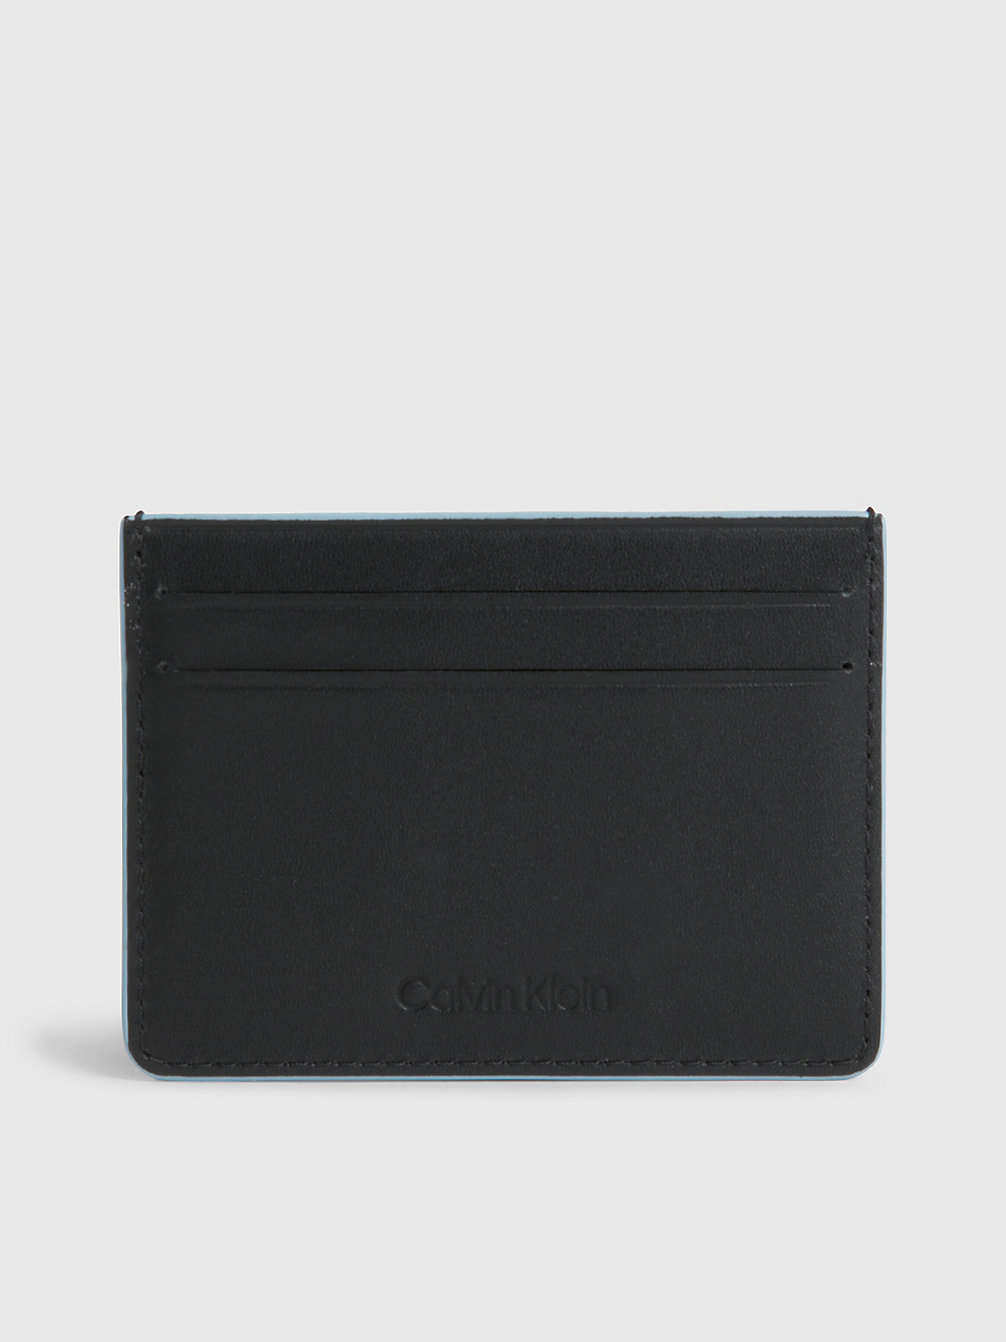 CK BLACK Leather Cardholder undefined men Calvin Klein